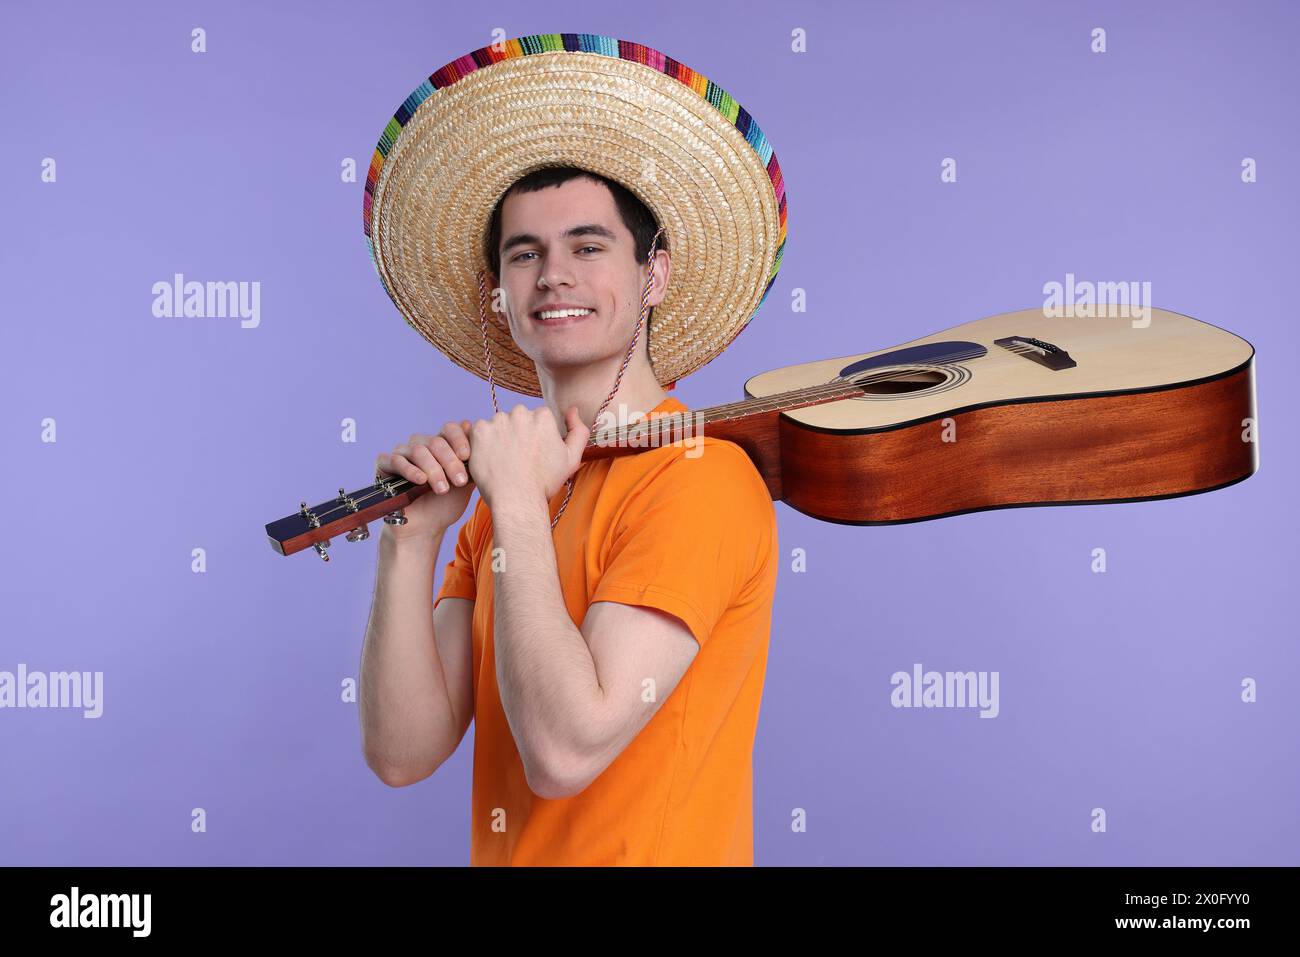 Jeune homme en chapeau sombrero mexicain avec guitare sur fond violet Banque D'Images